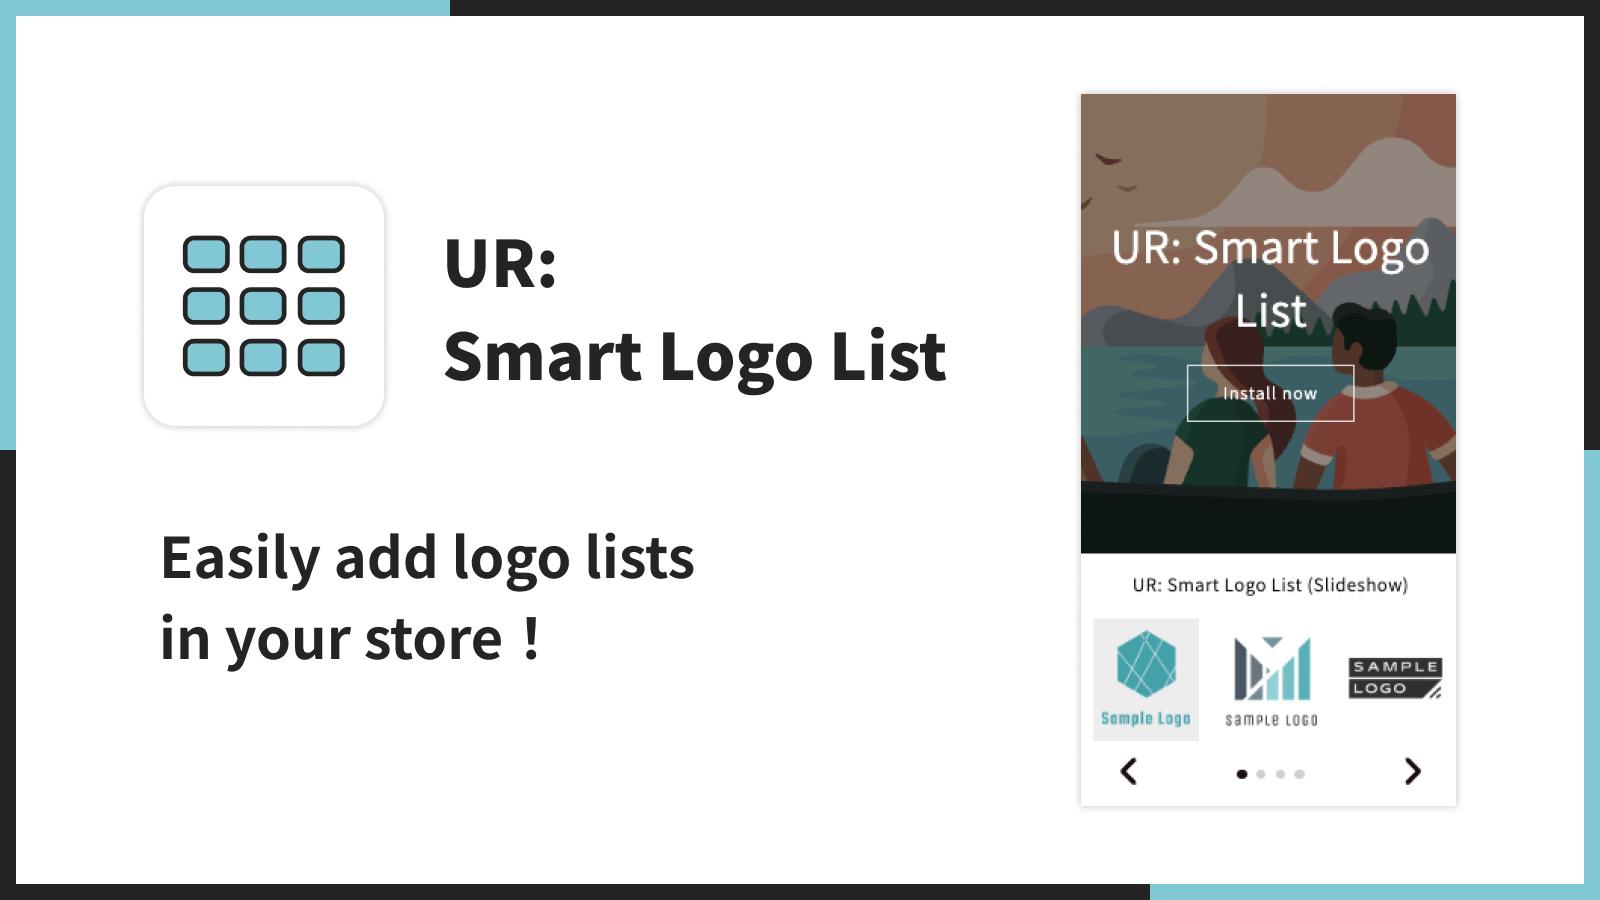 UR: Smart Logo List | Fügen Sie ganz einfach Logo-Listen in Ihrem Shop hinzu！